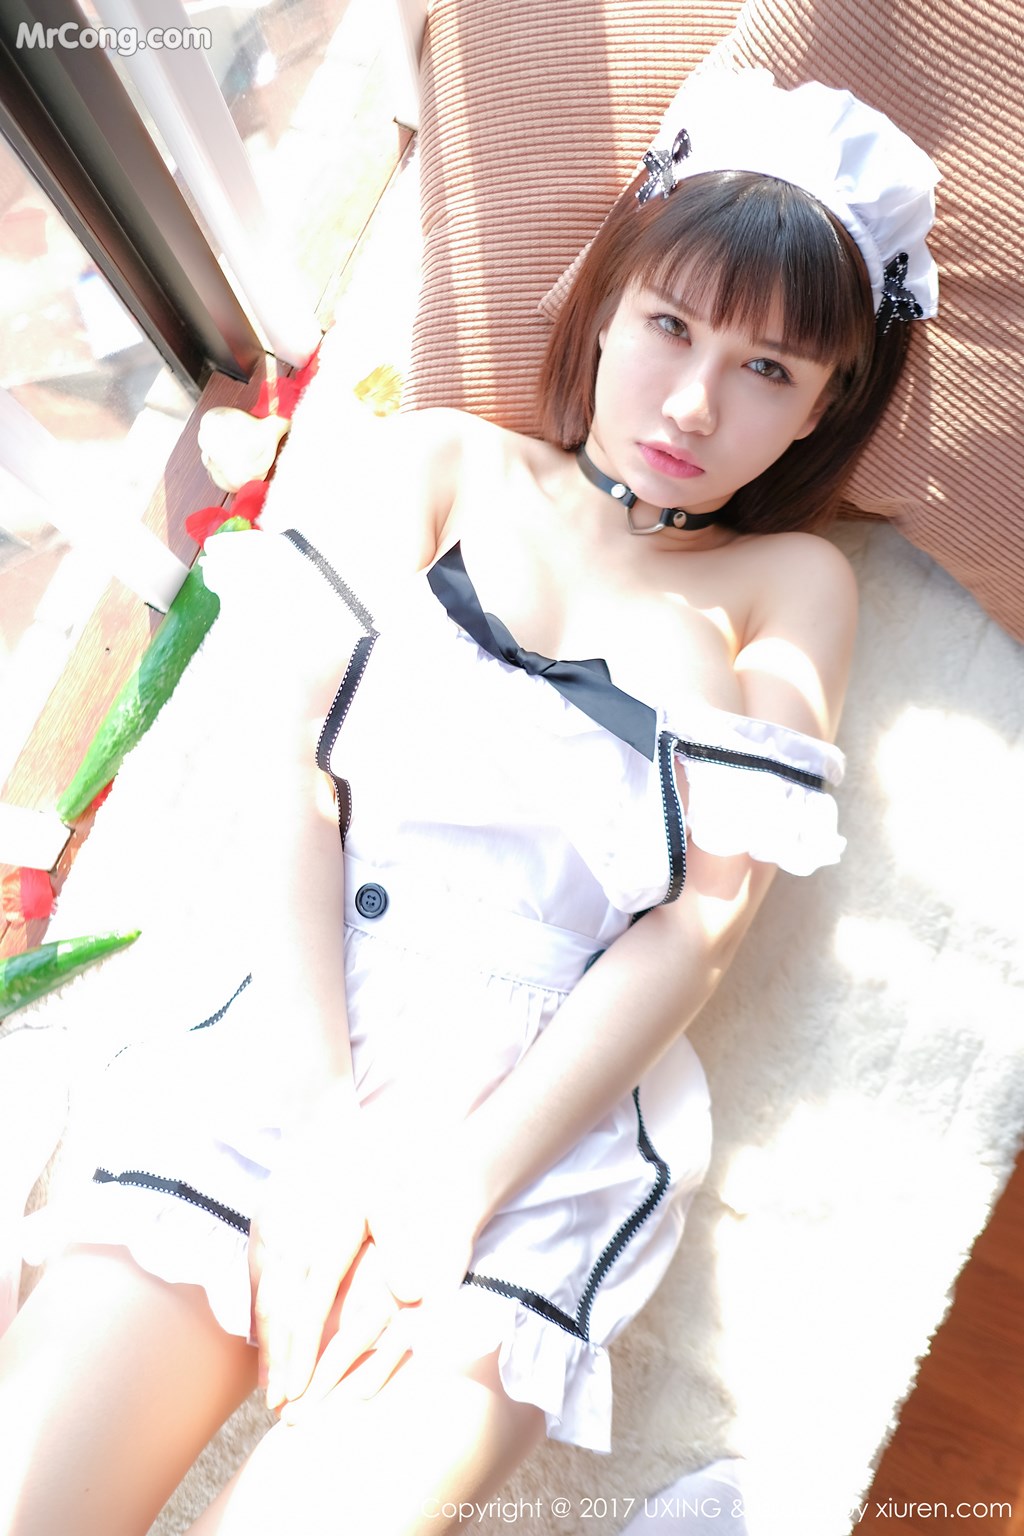 UXING Vol.058: Model Aojiao Meng Meng (K8 傲 娇 萌萌 Vivian) (35 photos) photo 2-13